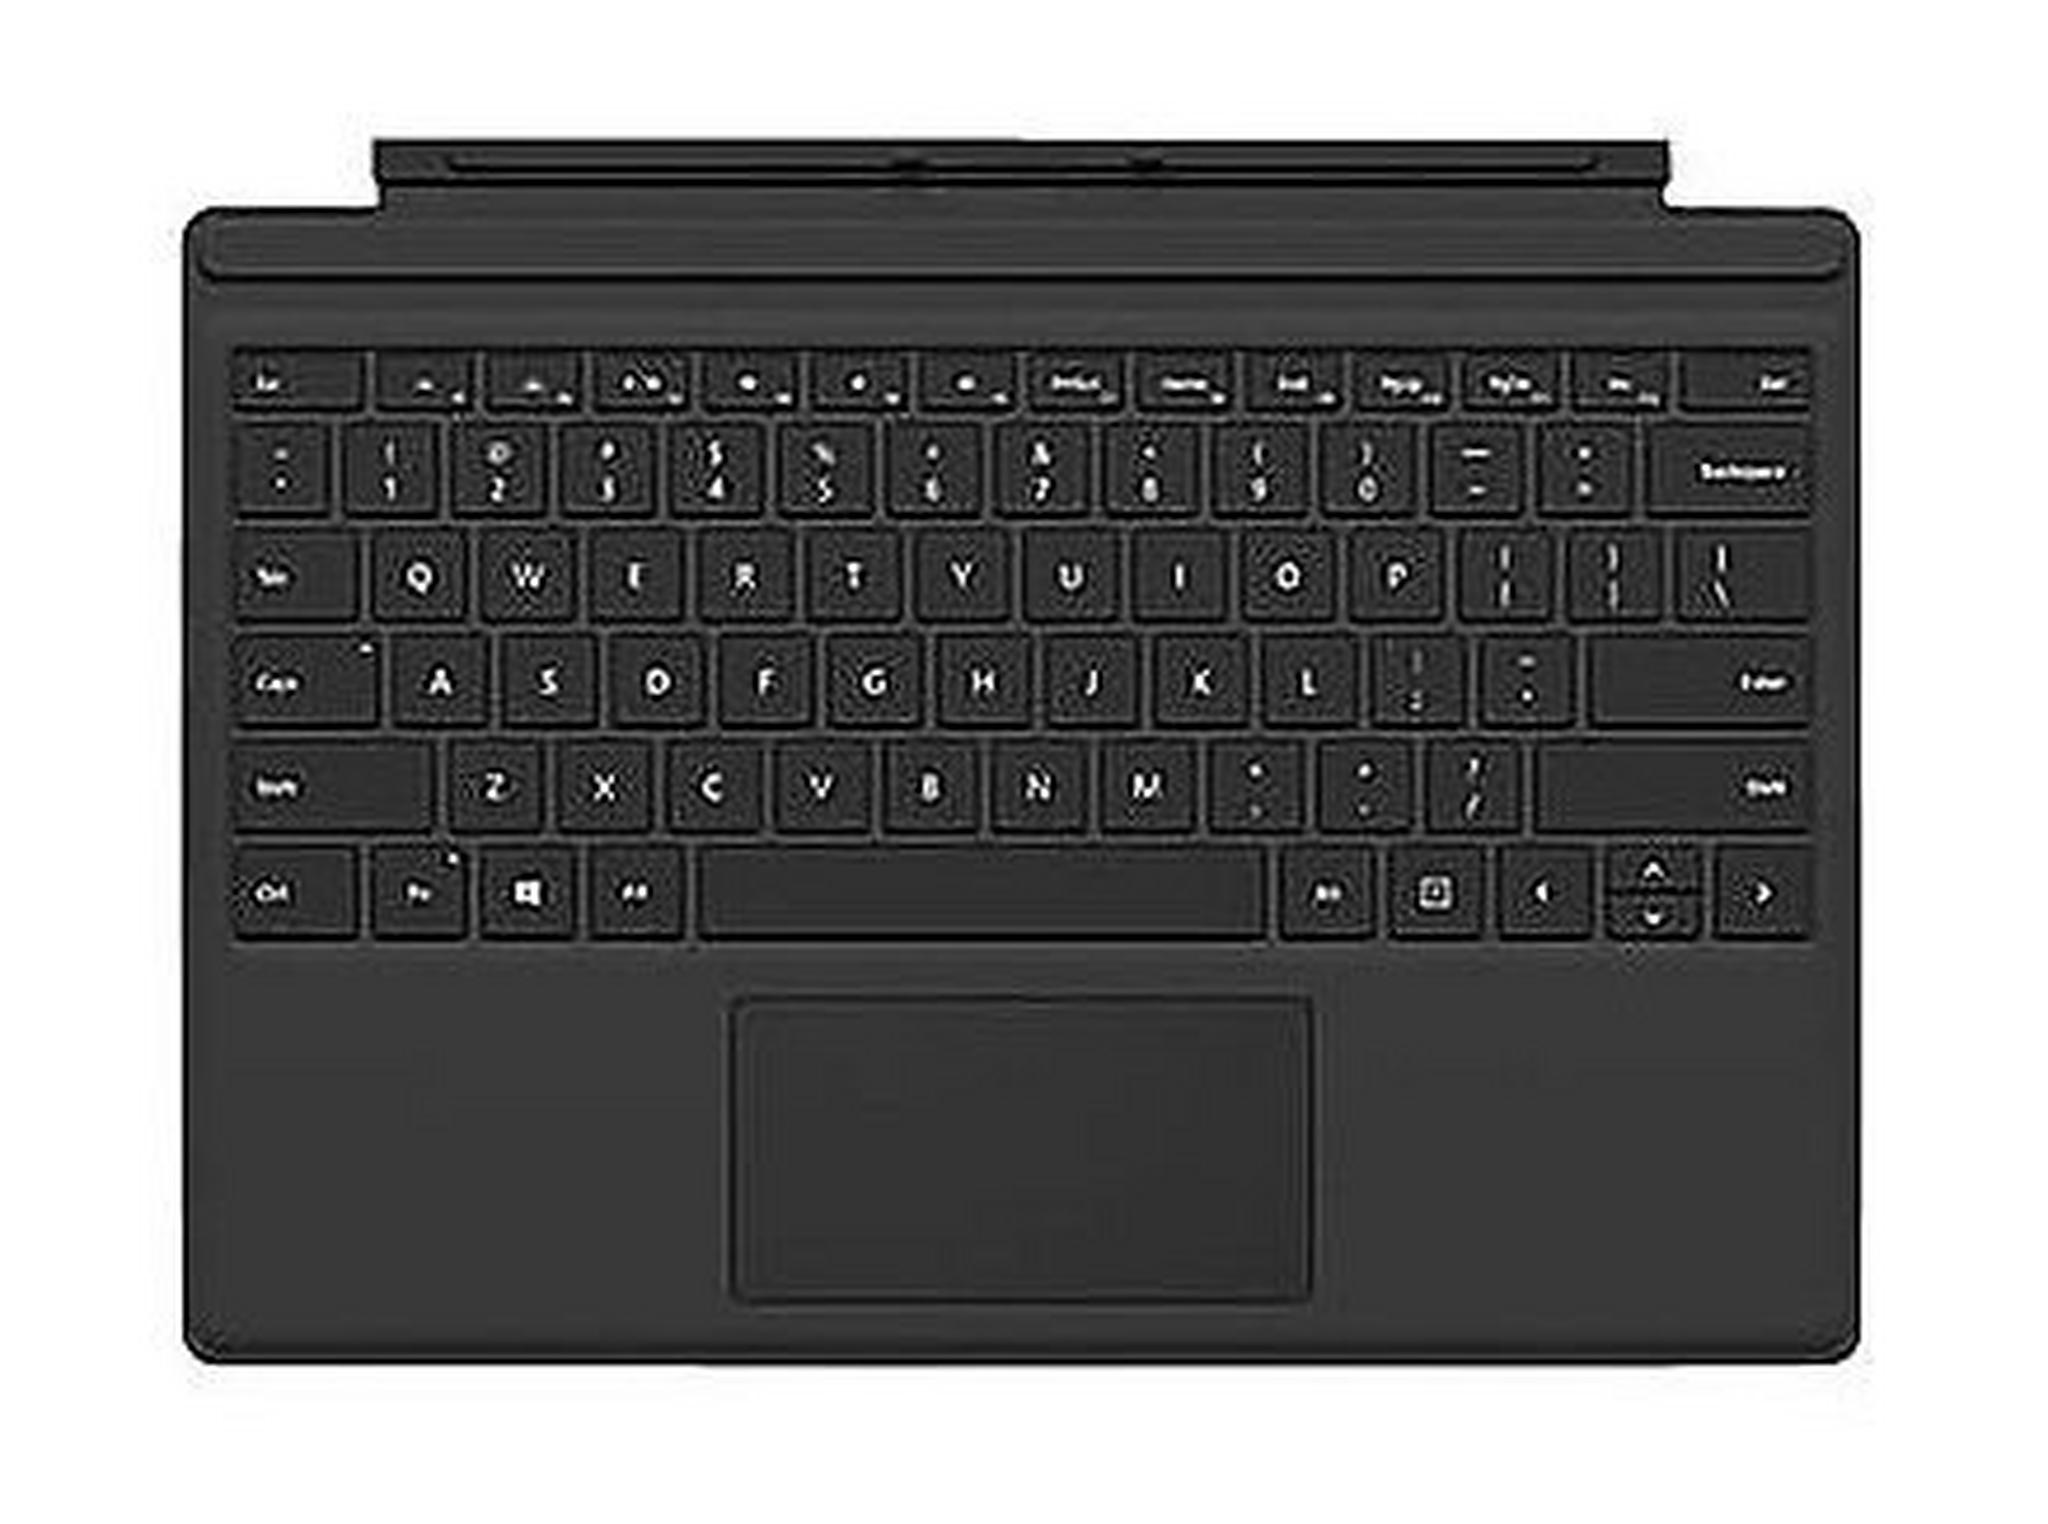 غطاء لوحة المفاتيح للكتابة لمايكروسوفت سيرفس برو ٤ – أسود (R9Q-00001)